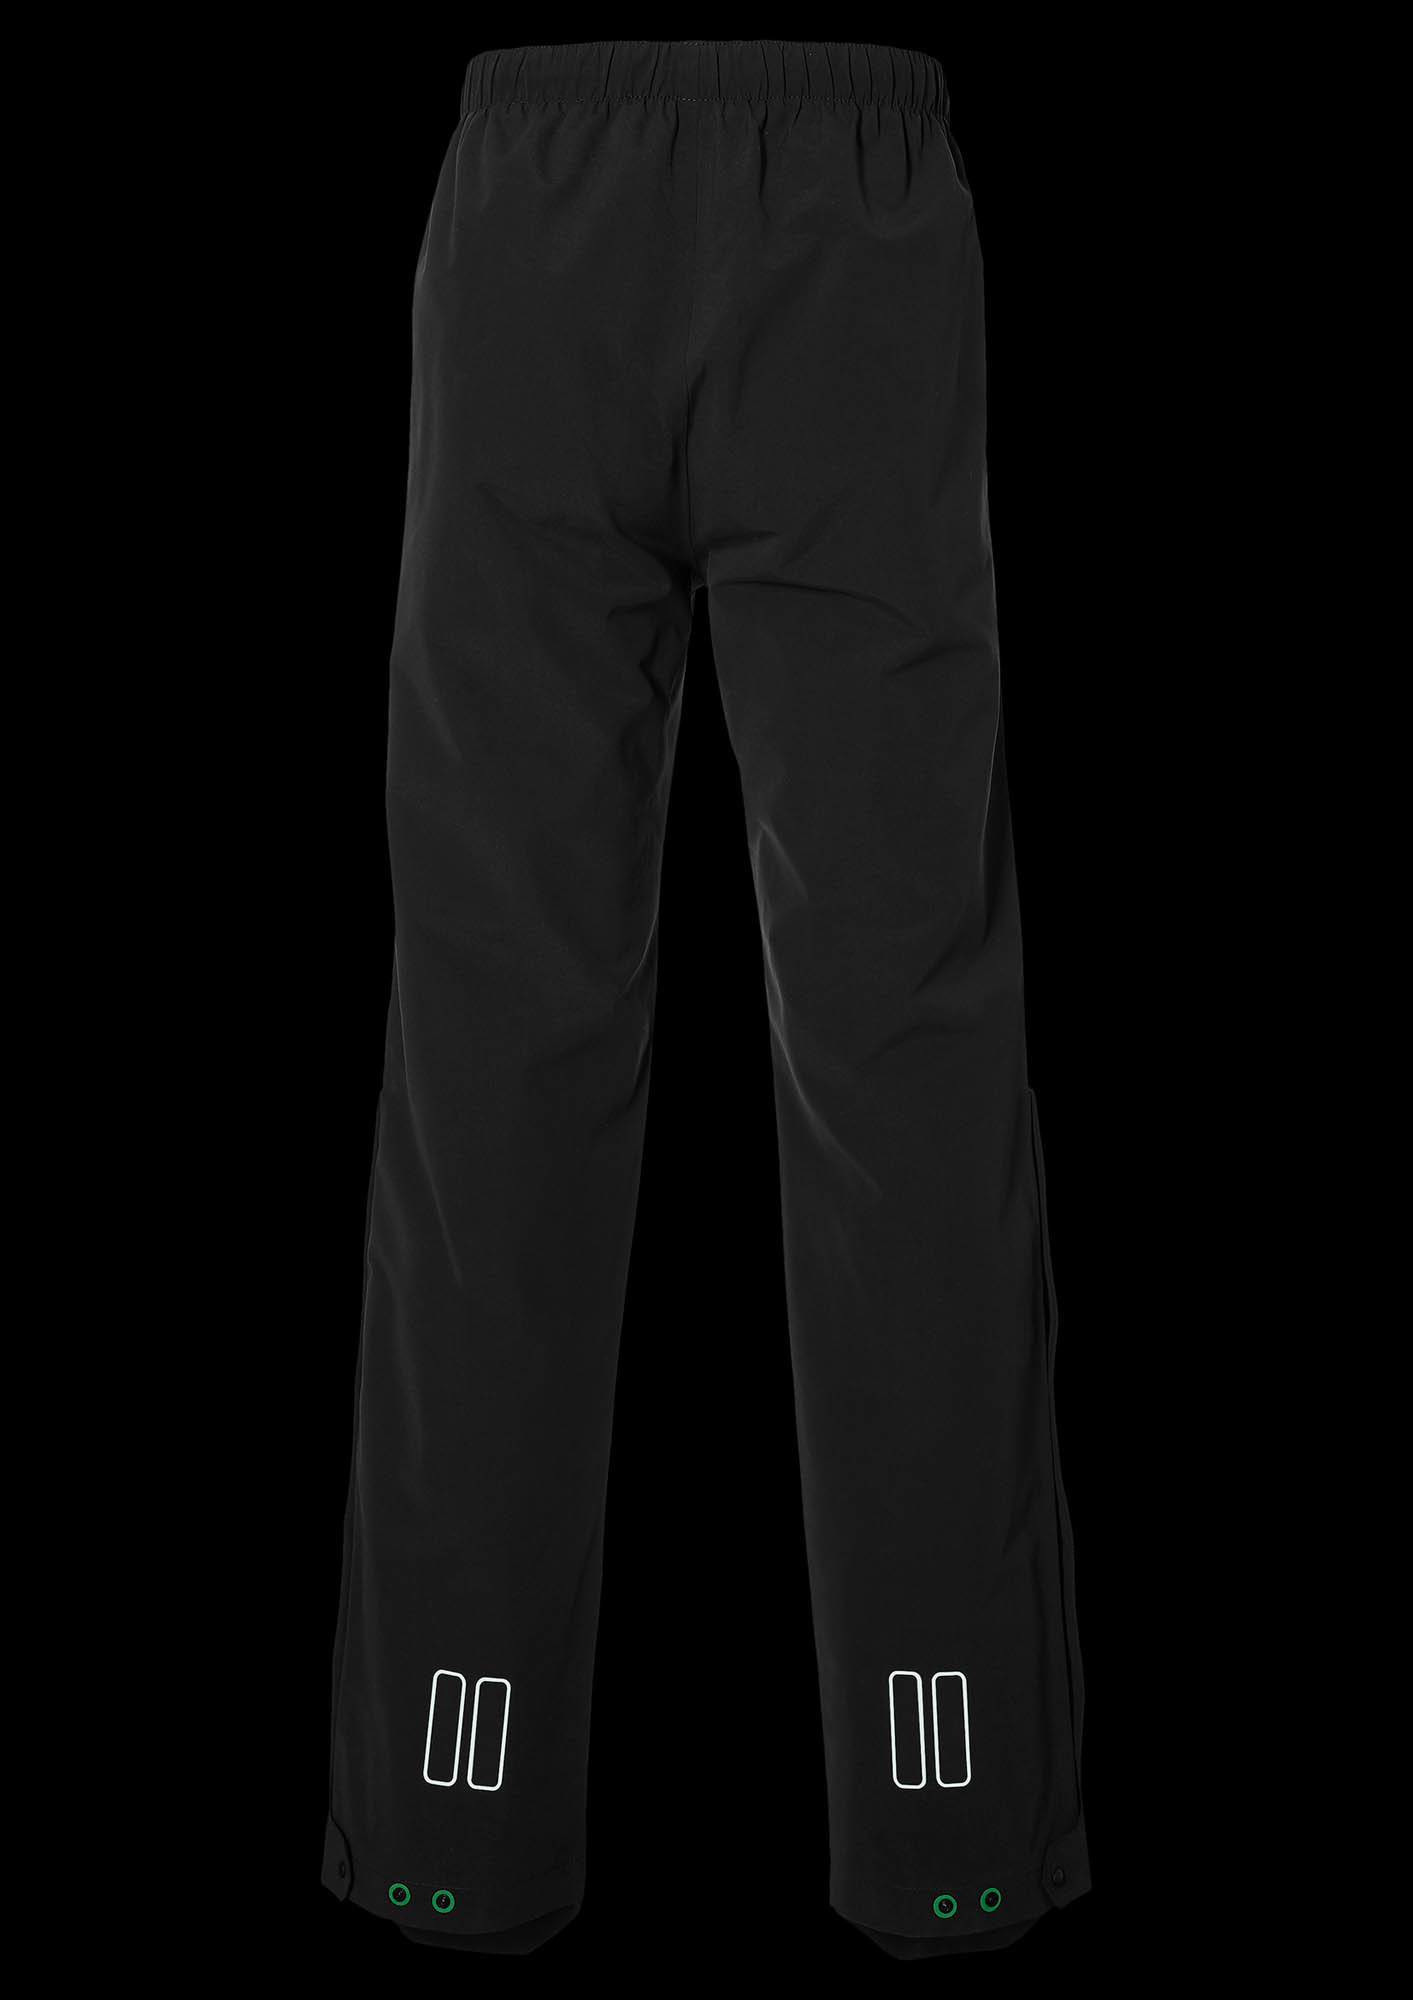 Pantalon Impermeable Basil Mosse Hombre Talla de Ropa XXL Colores